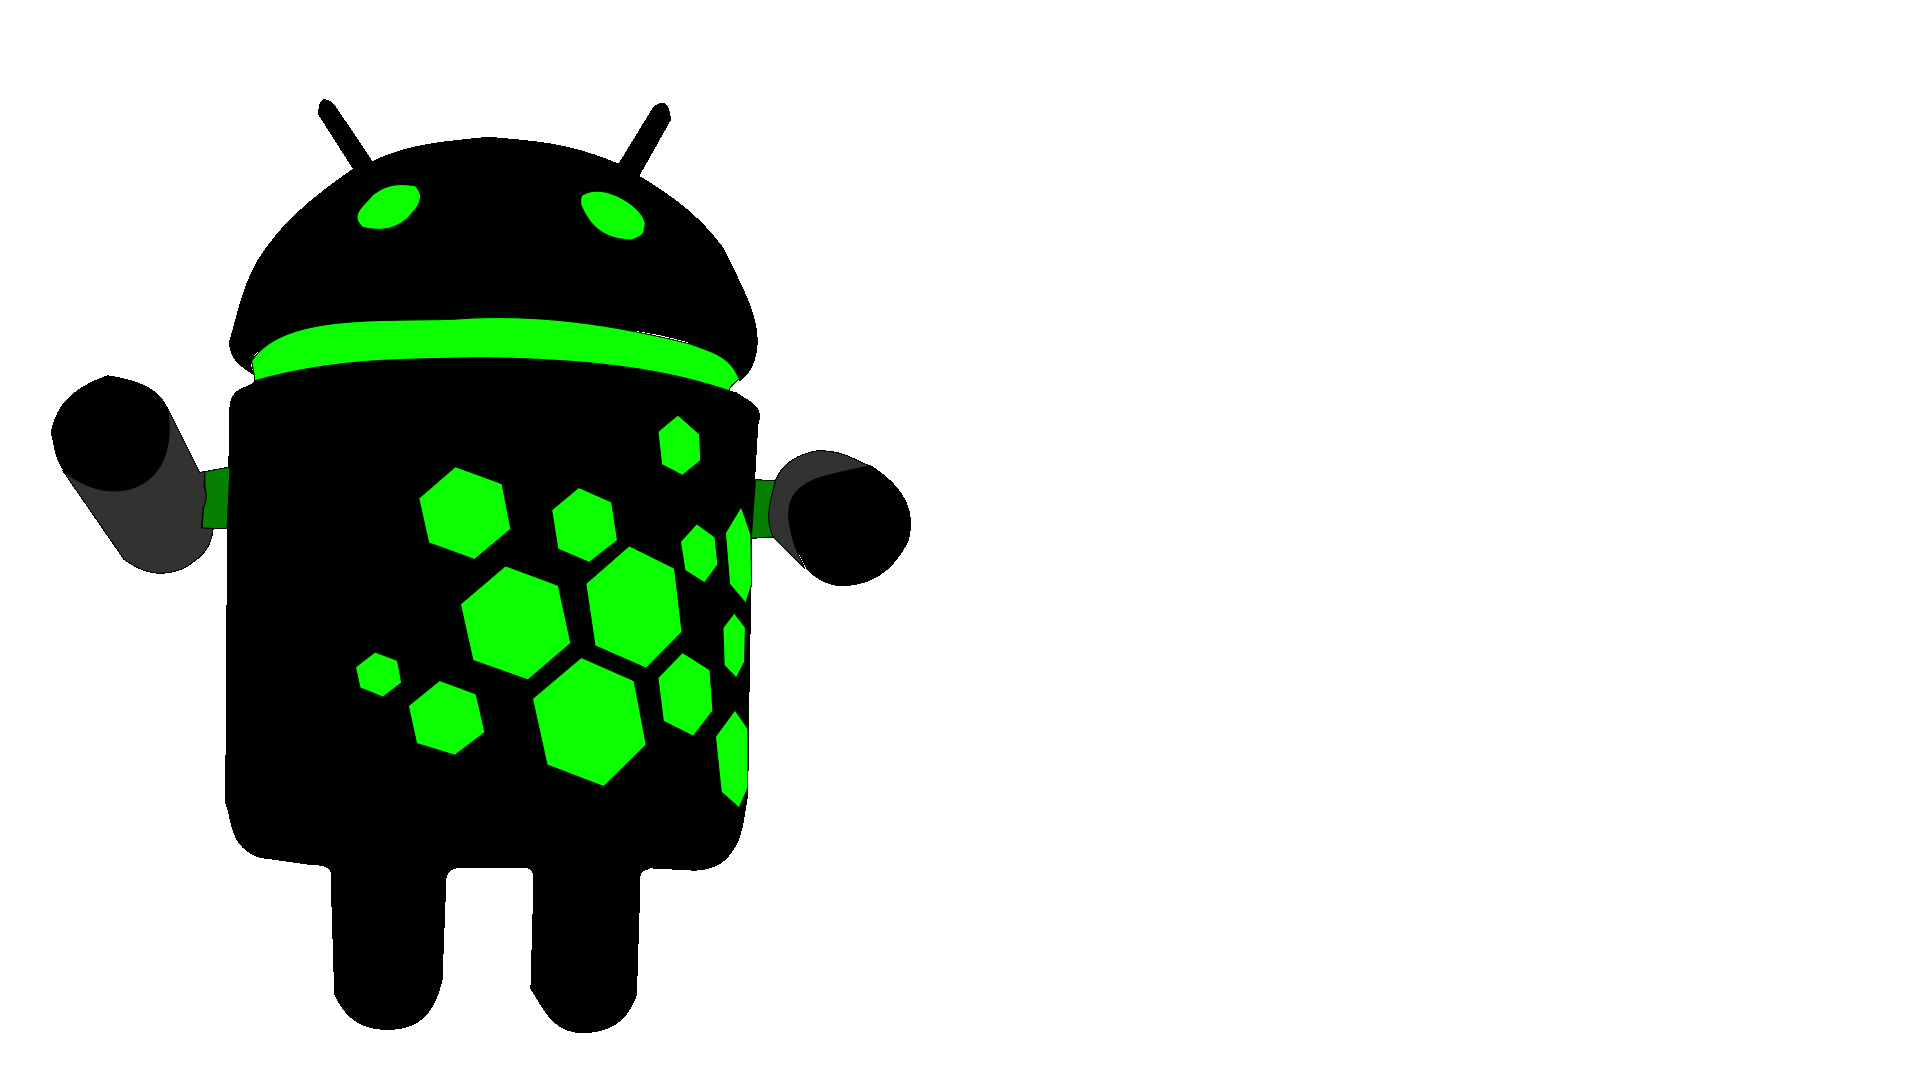 Жив обои на русском андроид. Логотип андроид. Гифки андроид. Робот андроид зеленый. Обои на андроид.